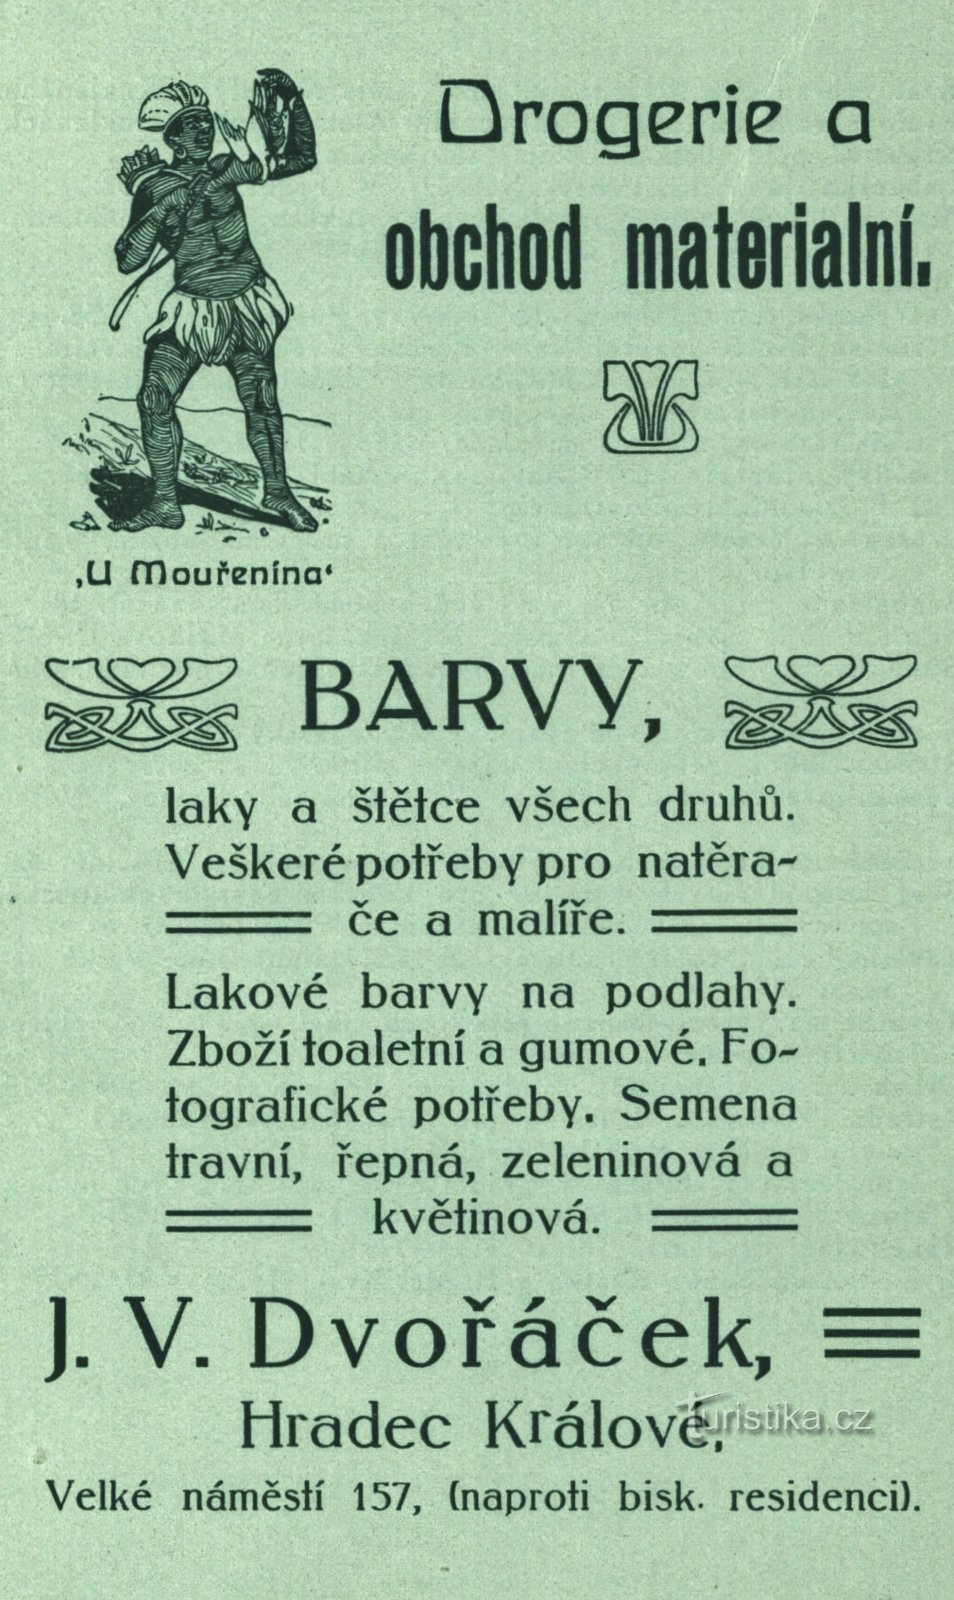 Reklama z epoki apteki Dvořáčka z 1896 r.